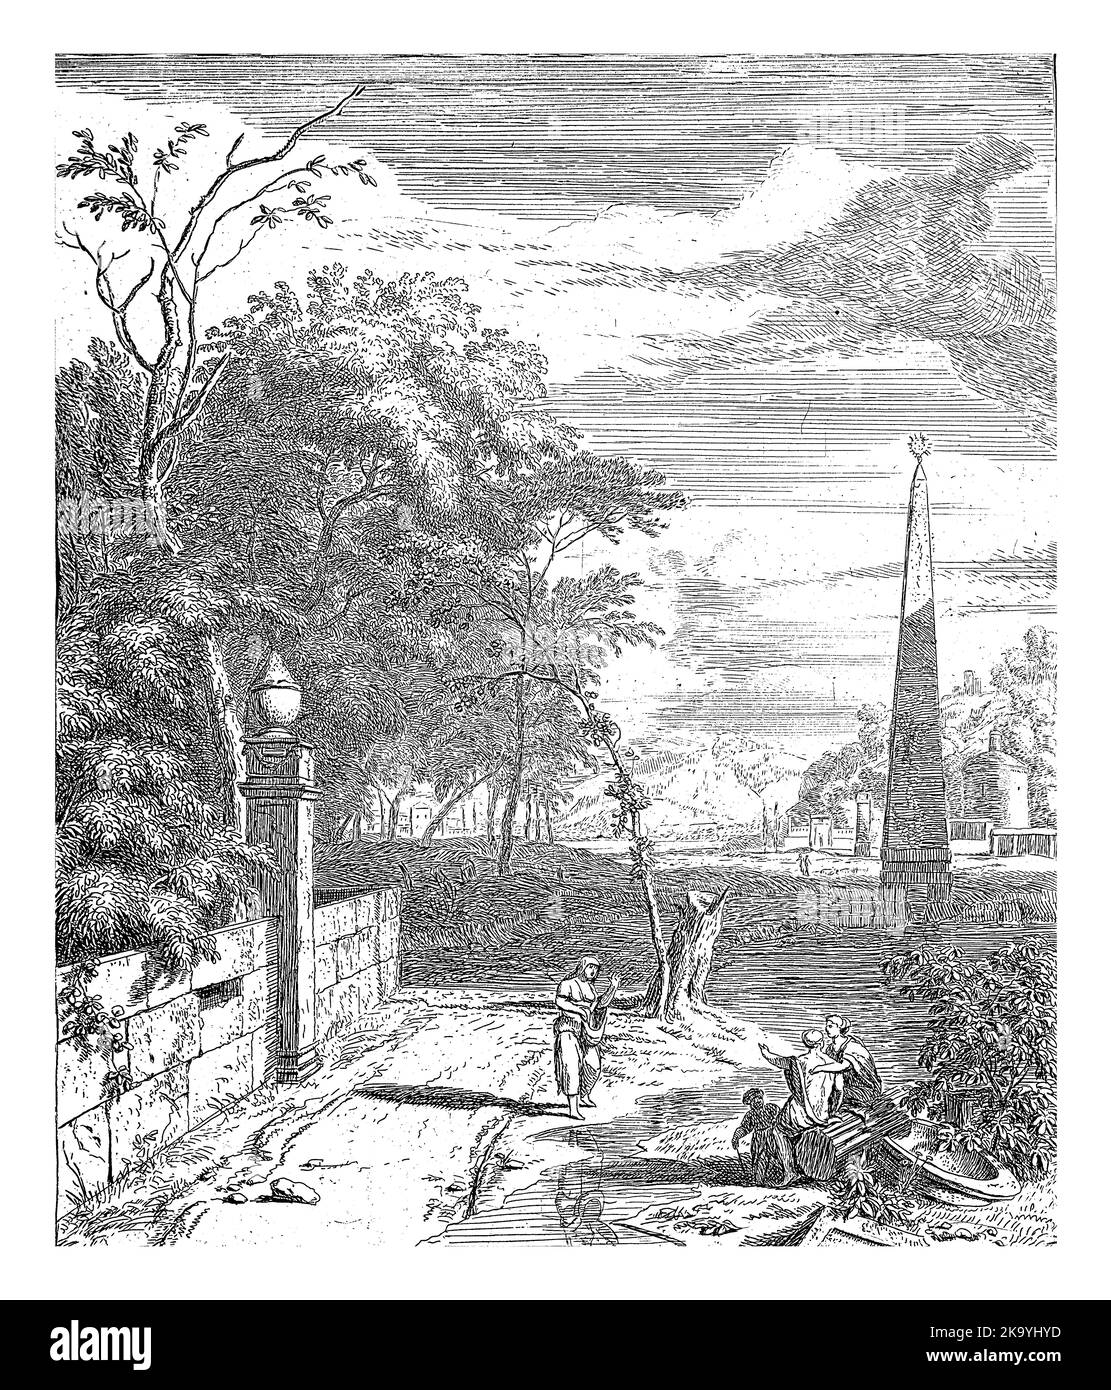 Paysage avec obélisque et mur de jardin. Au premier plan, trois femmes et un enfant le long d'un ruisseau. Banque D'Images